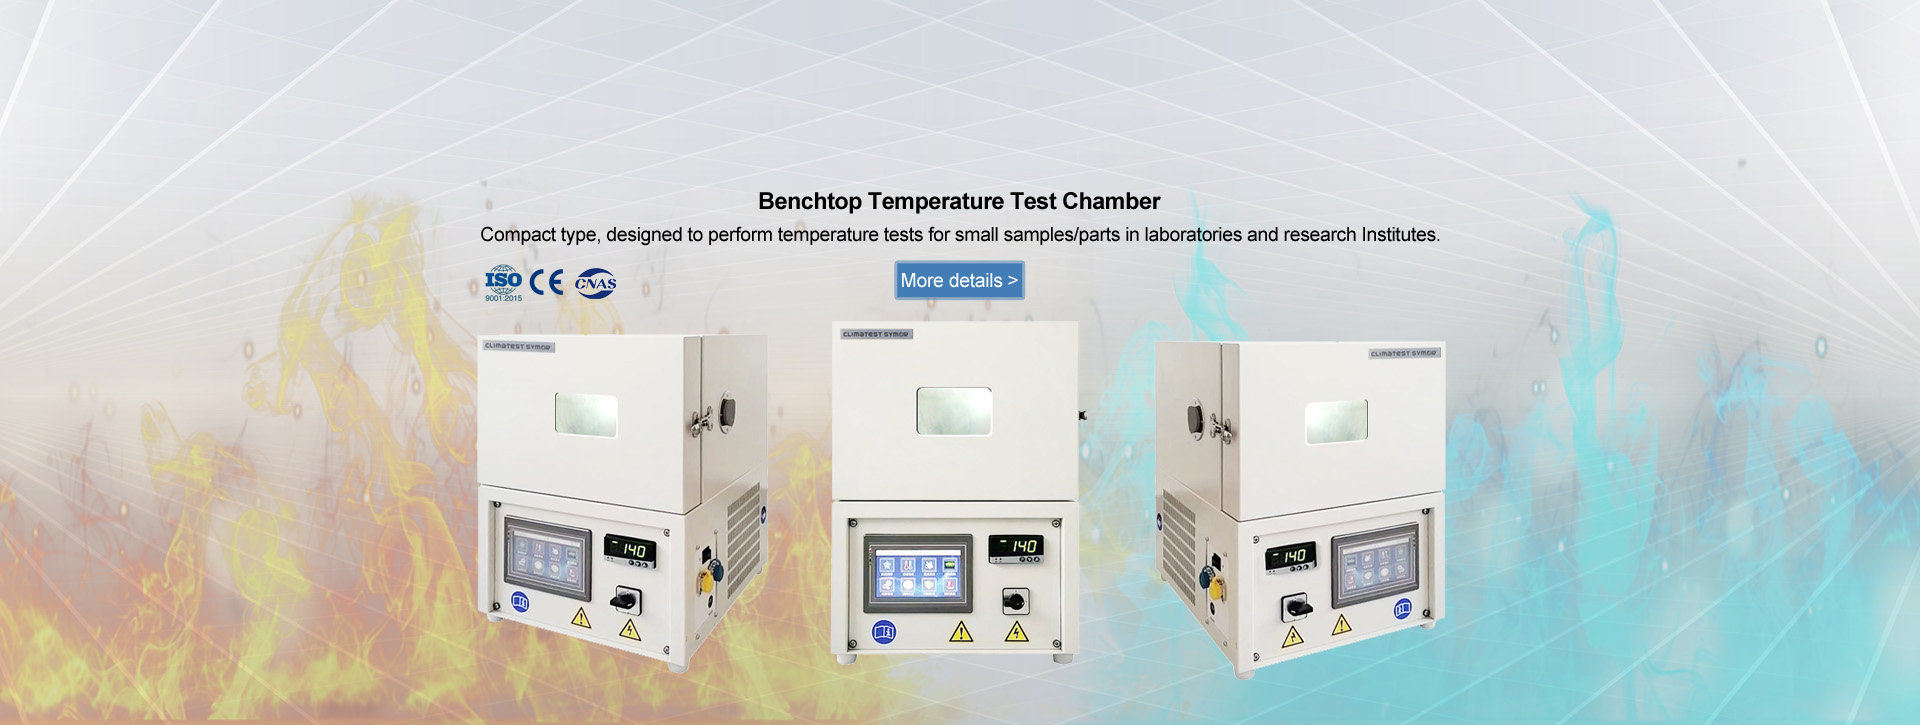 Pabrika ng Benchtop Temperature Test Chamber